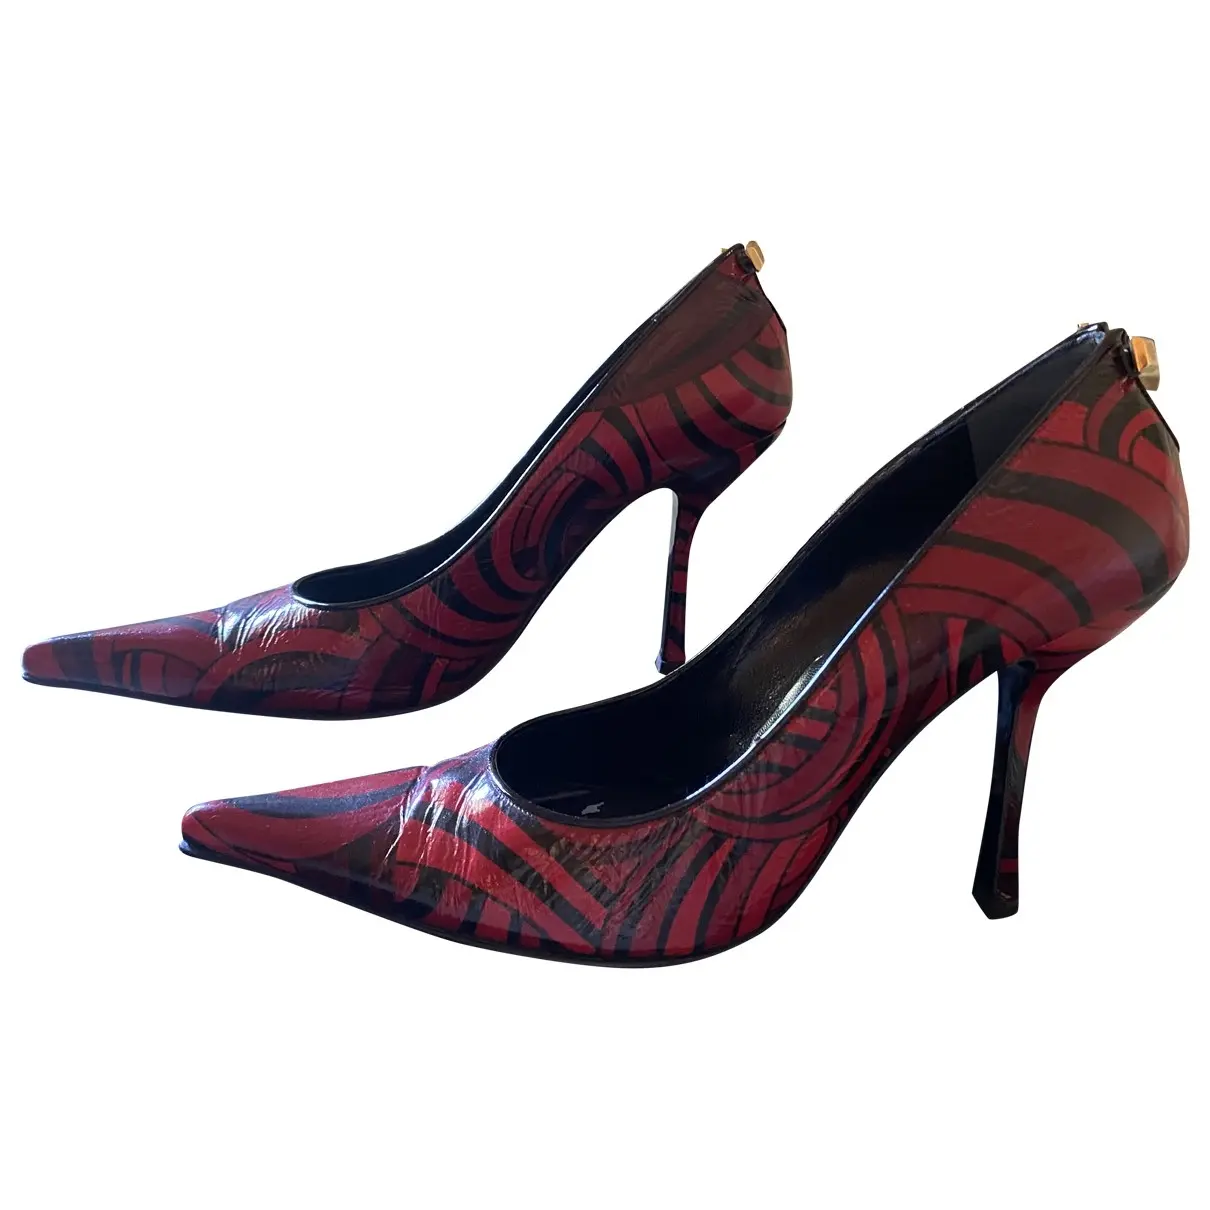 Leather heels Gianni Versace